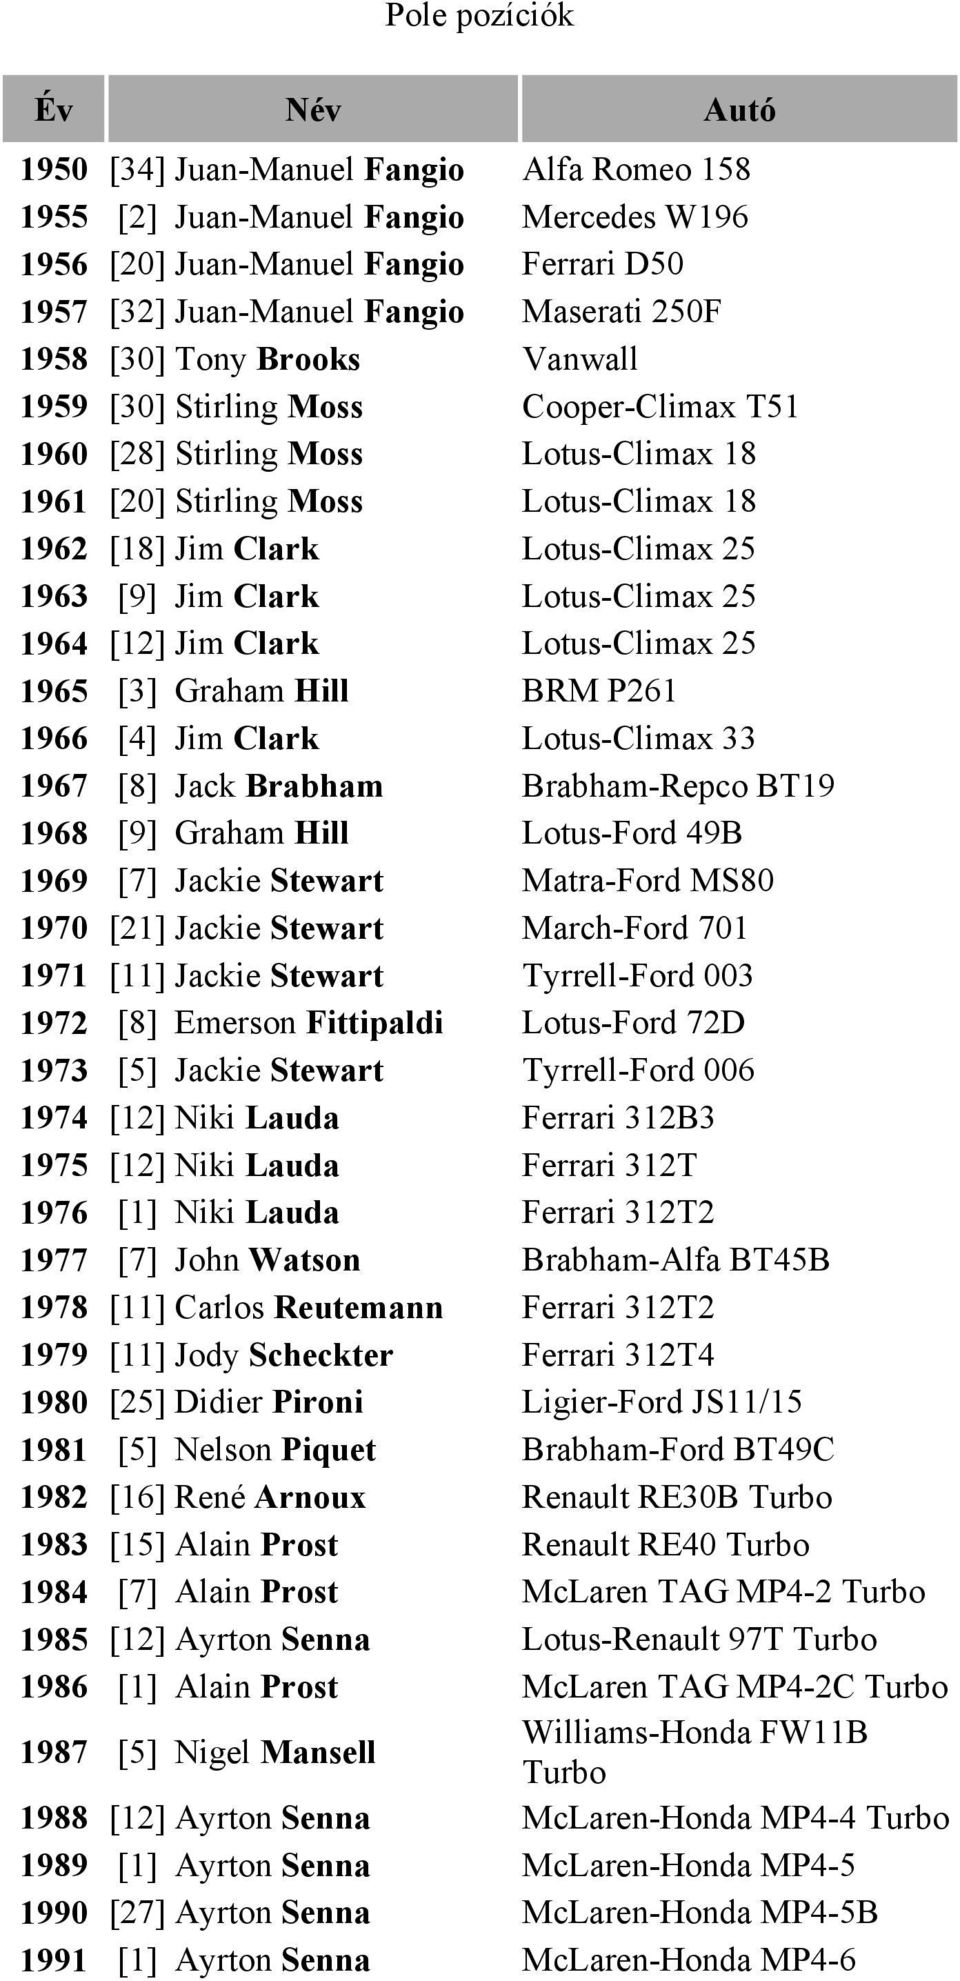 Jim Clark Lotus-Climax 25 1964 [12] Jim Clark Lotus-Climax 25 1965 [3] Graham Hill BRM P261 1966 [4] Jim Clark Lotus-Climax 33 1967 [8] Jack Brabham Brabham-Repco BT19 1968 [9] Graham Hill Lotus-Ford